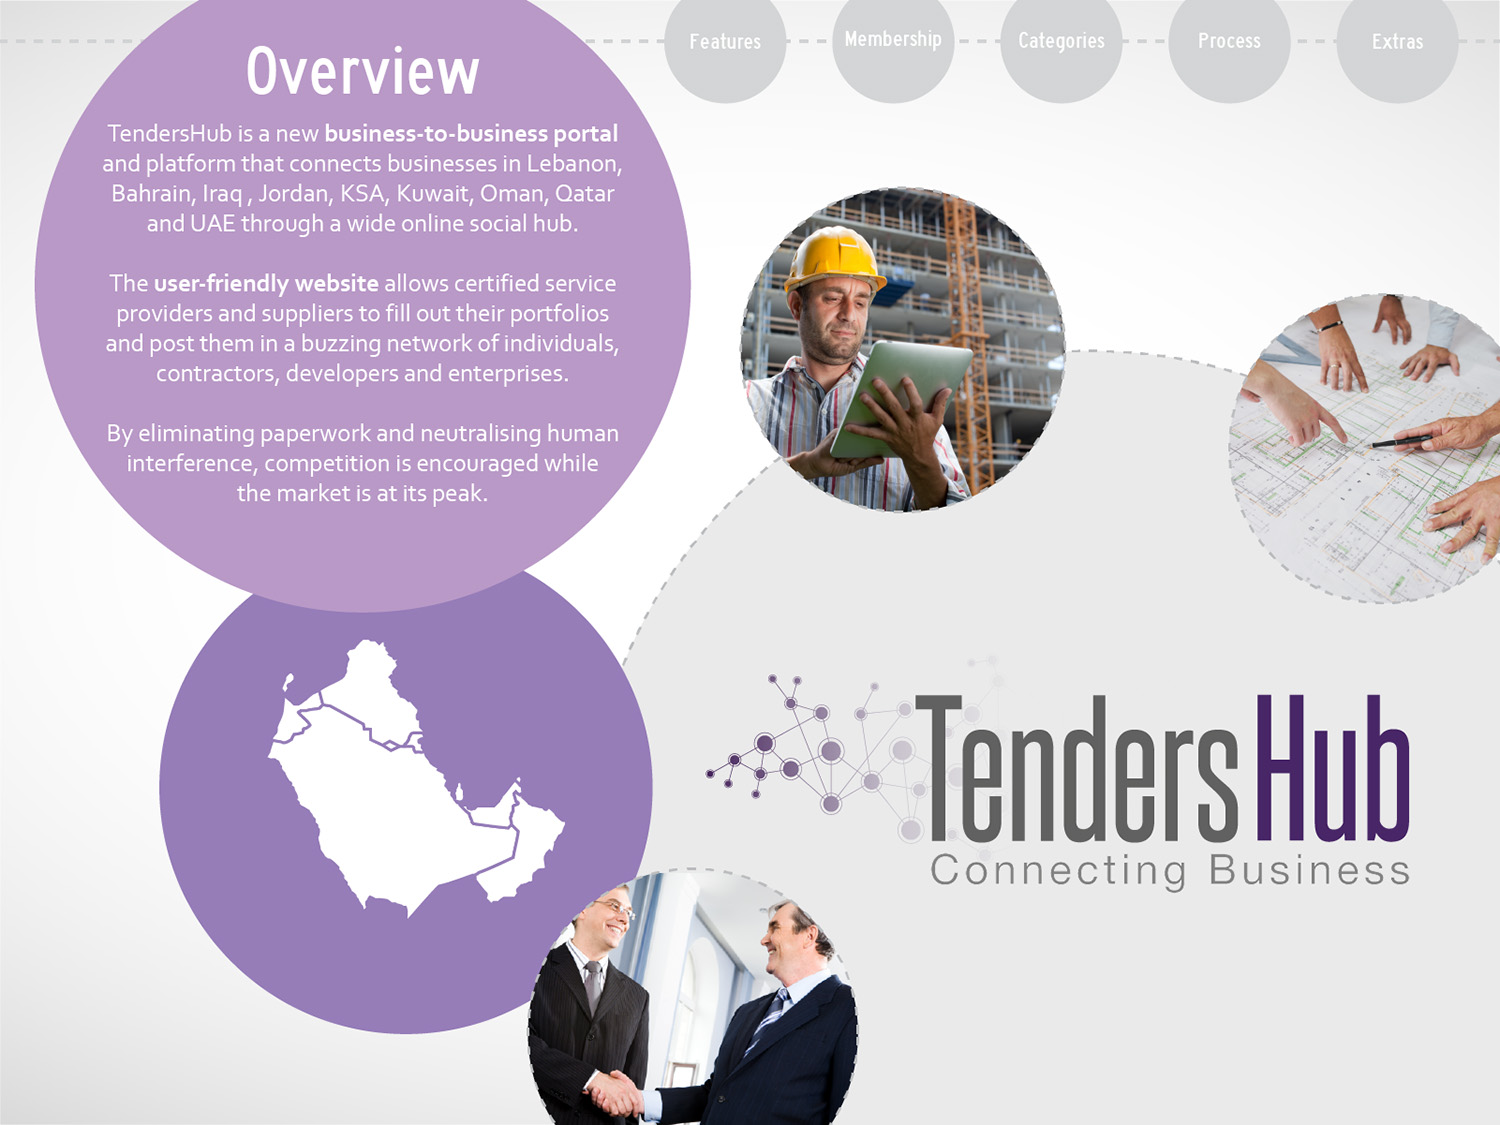 1 TendersHub brochure_Overview.jpg